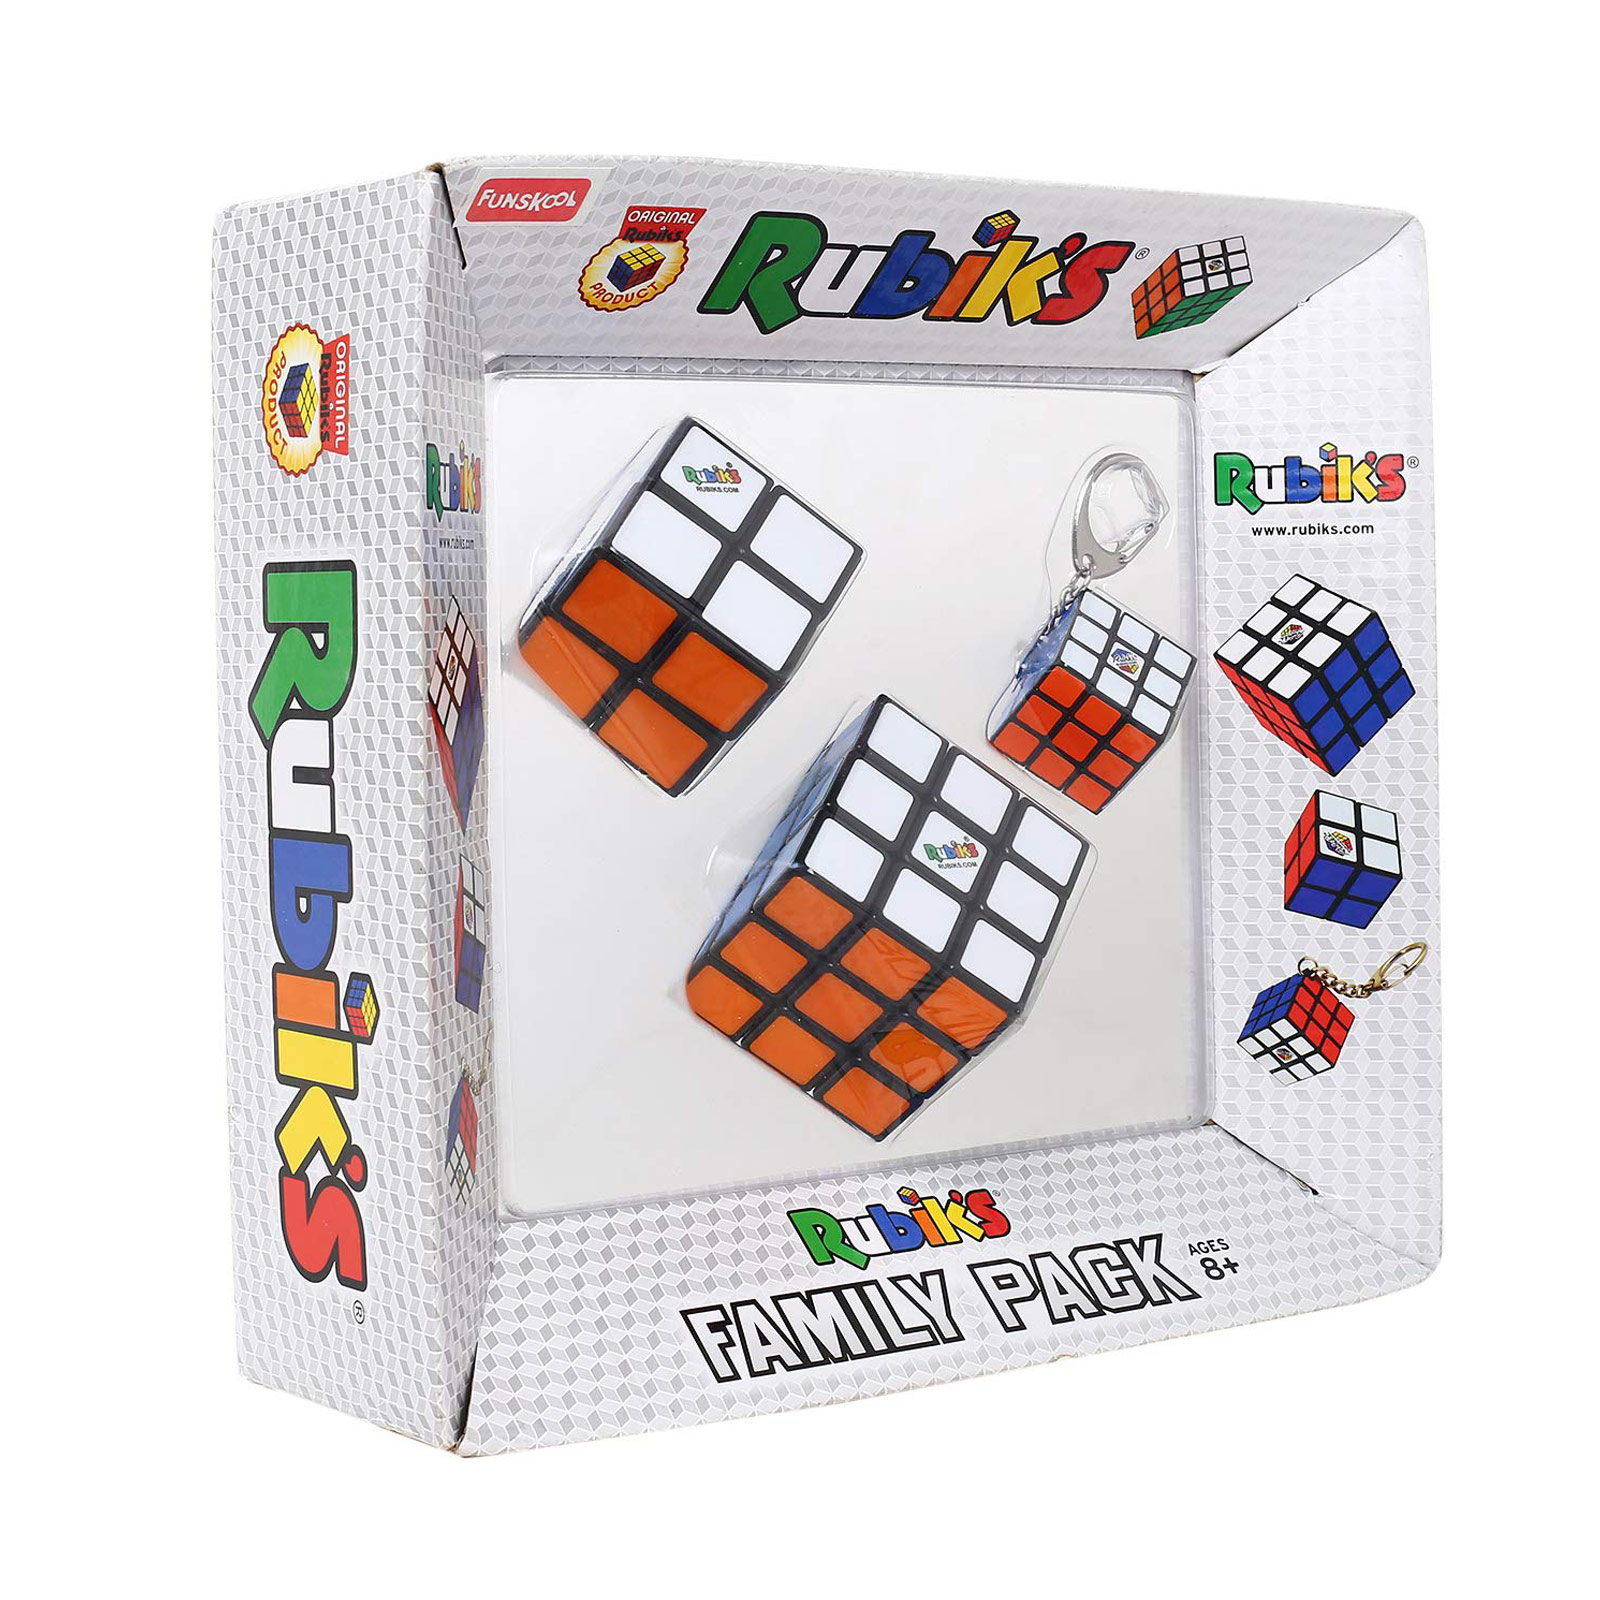 Rubiks Family